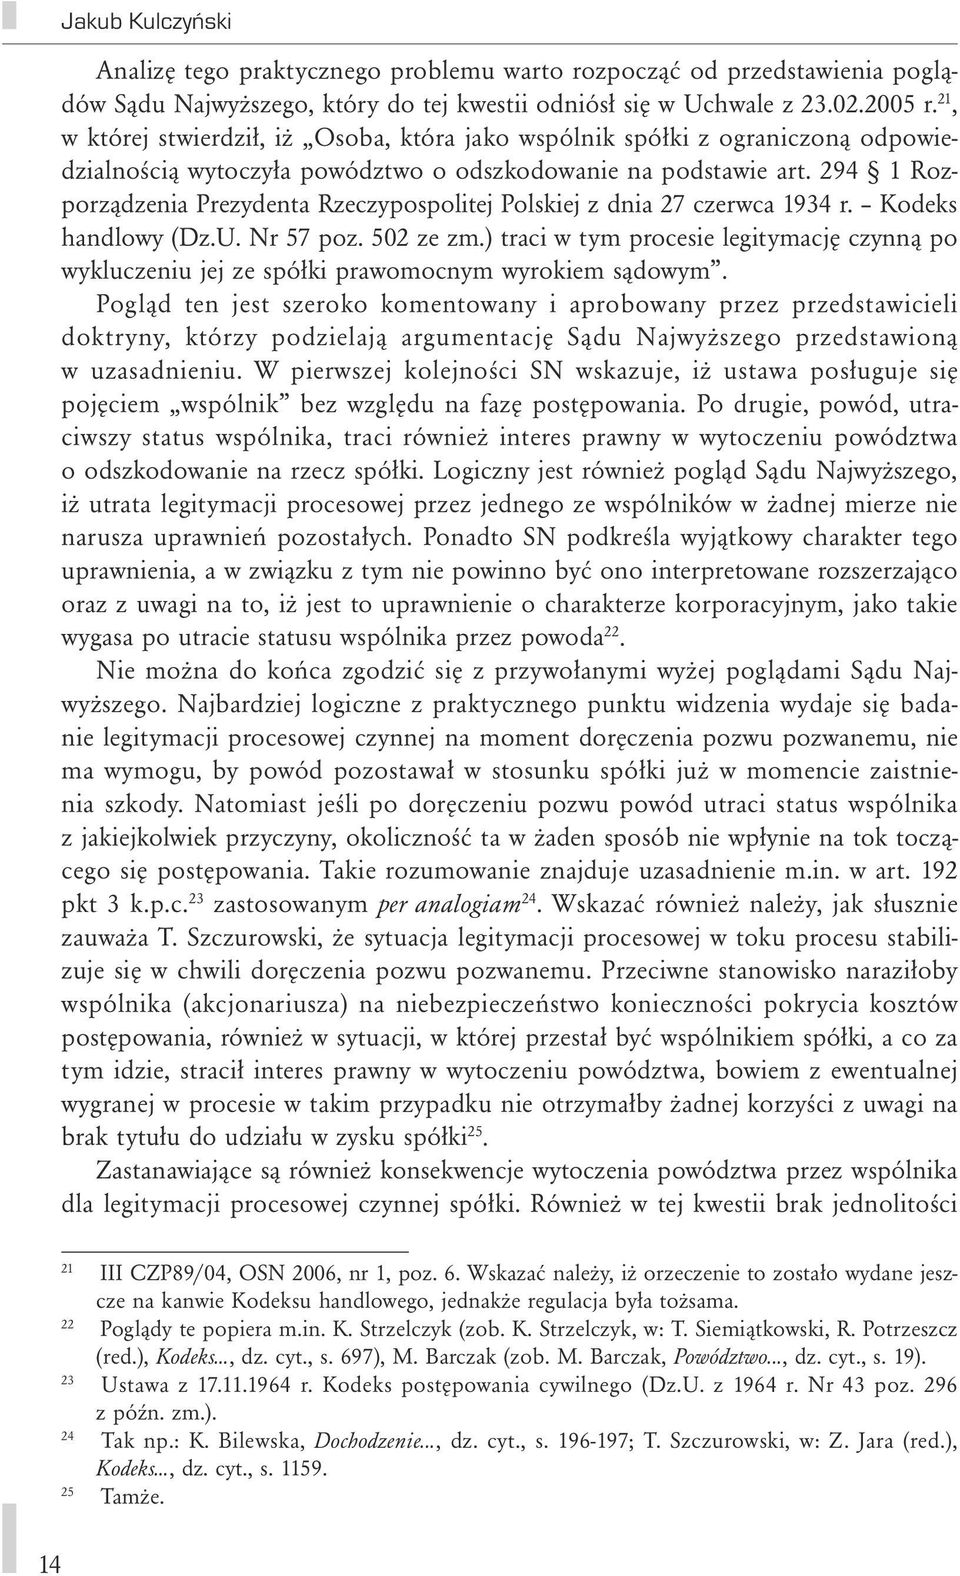 294 1 Rozporządzenia Prezydenta Rzeczypospolitej Polskiej z dnia 27 czerwca 1934 r. Kodeks handlowy (Dz.U. Nr 57 poz. 502 ze zm.